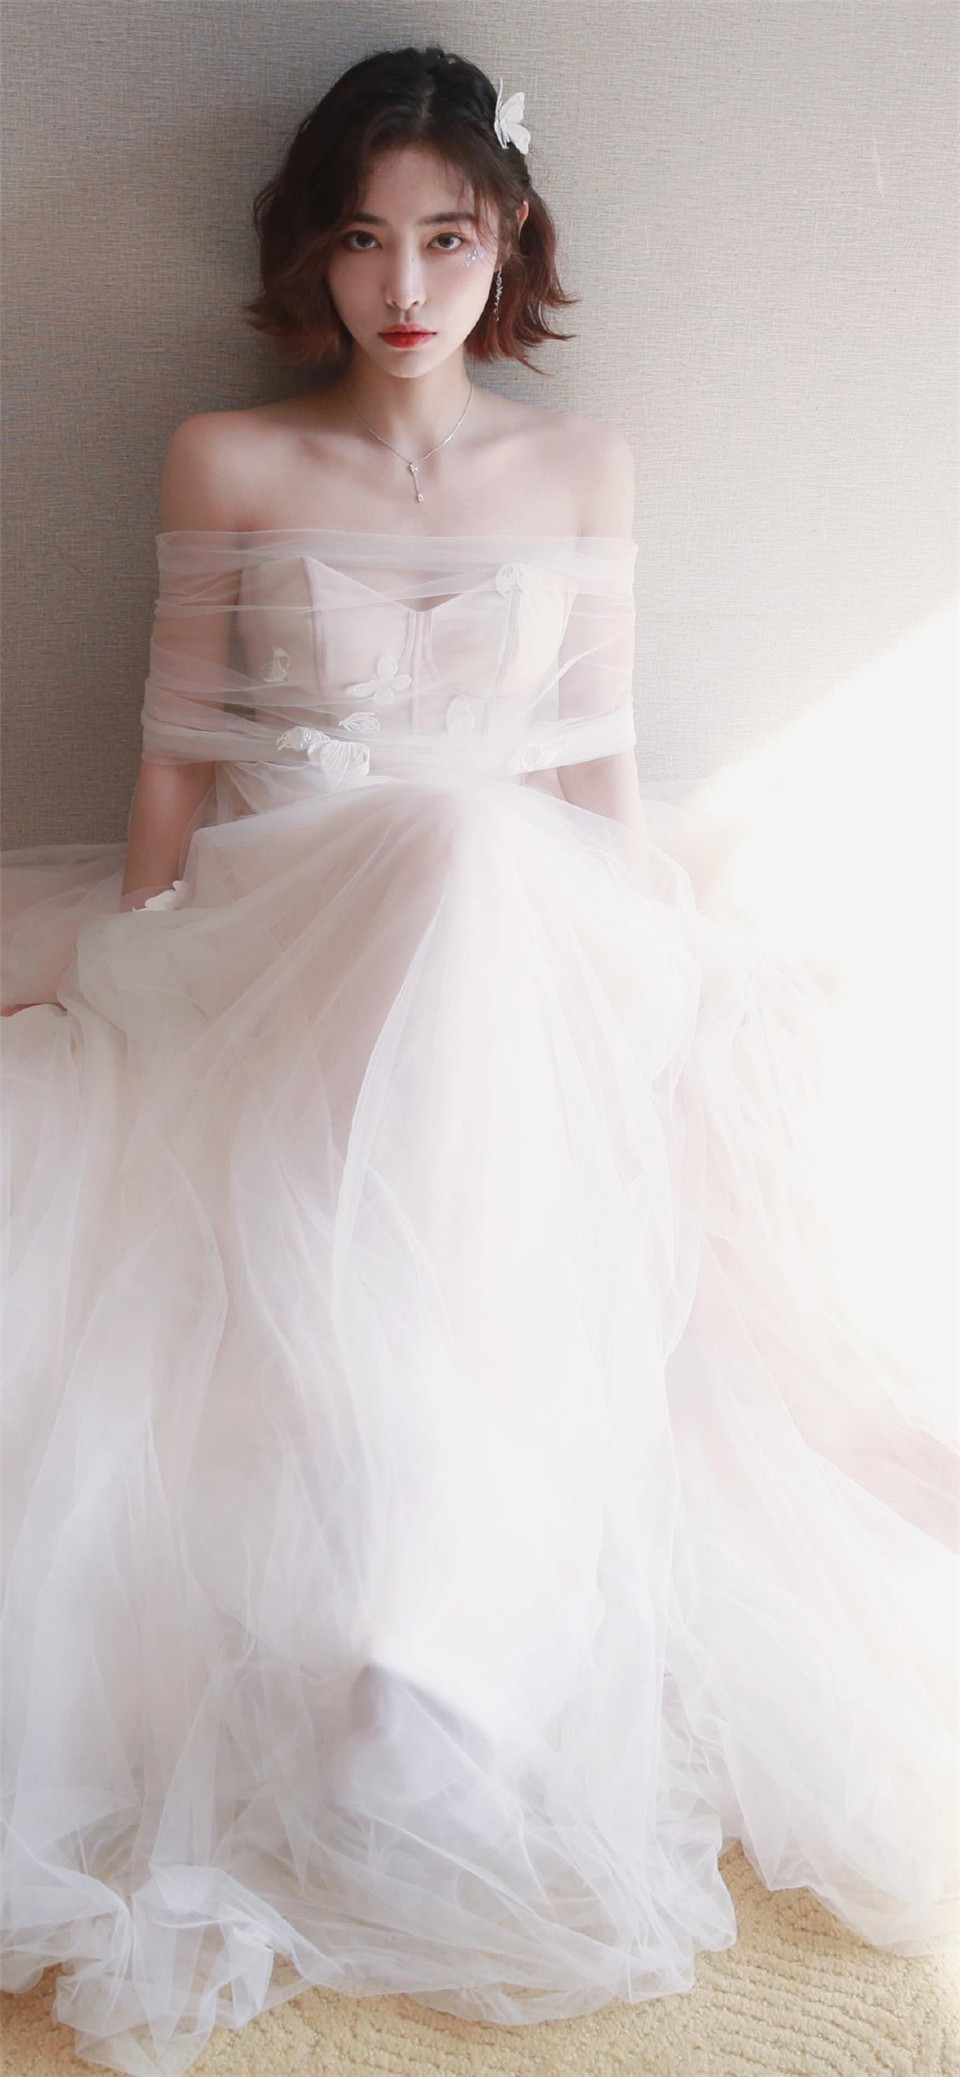 影视演员许佳琪白色蕾丝抹胸长裙迷人写真